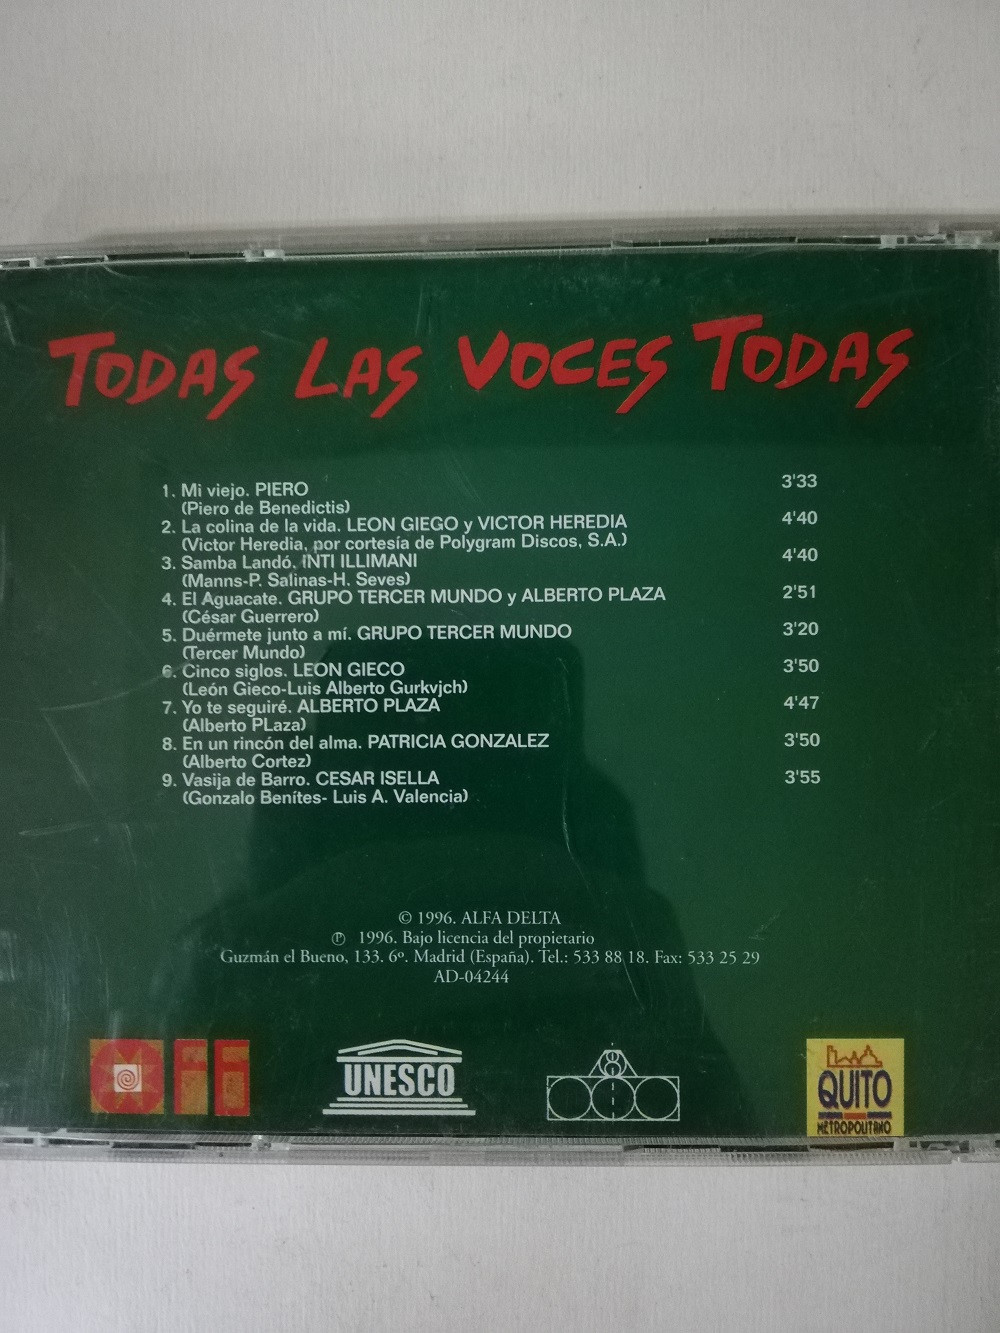 Imagen CD TODAS LAS VOCES TODAS - TODAS LAS VOCES TODAS VOL. 3 2